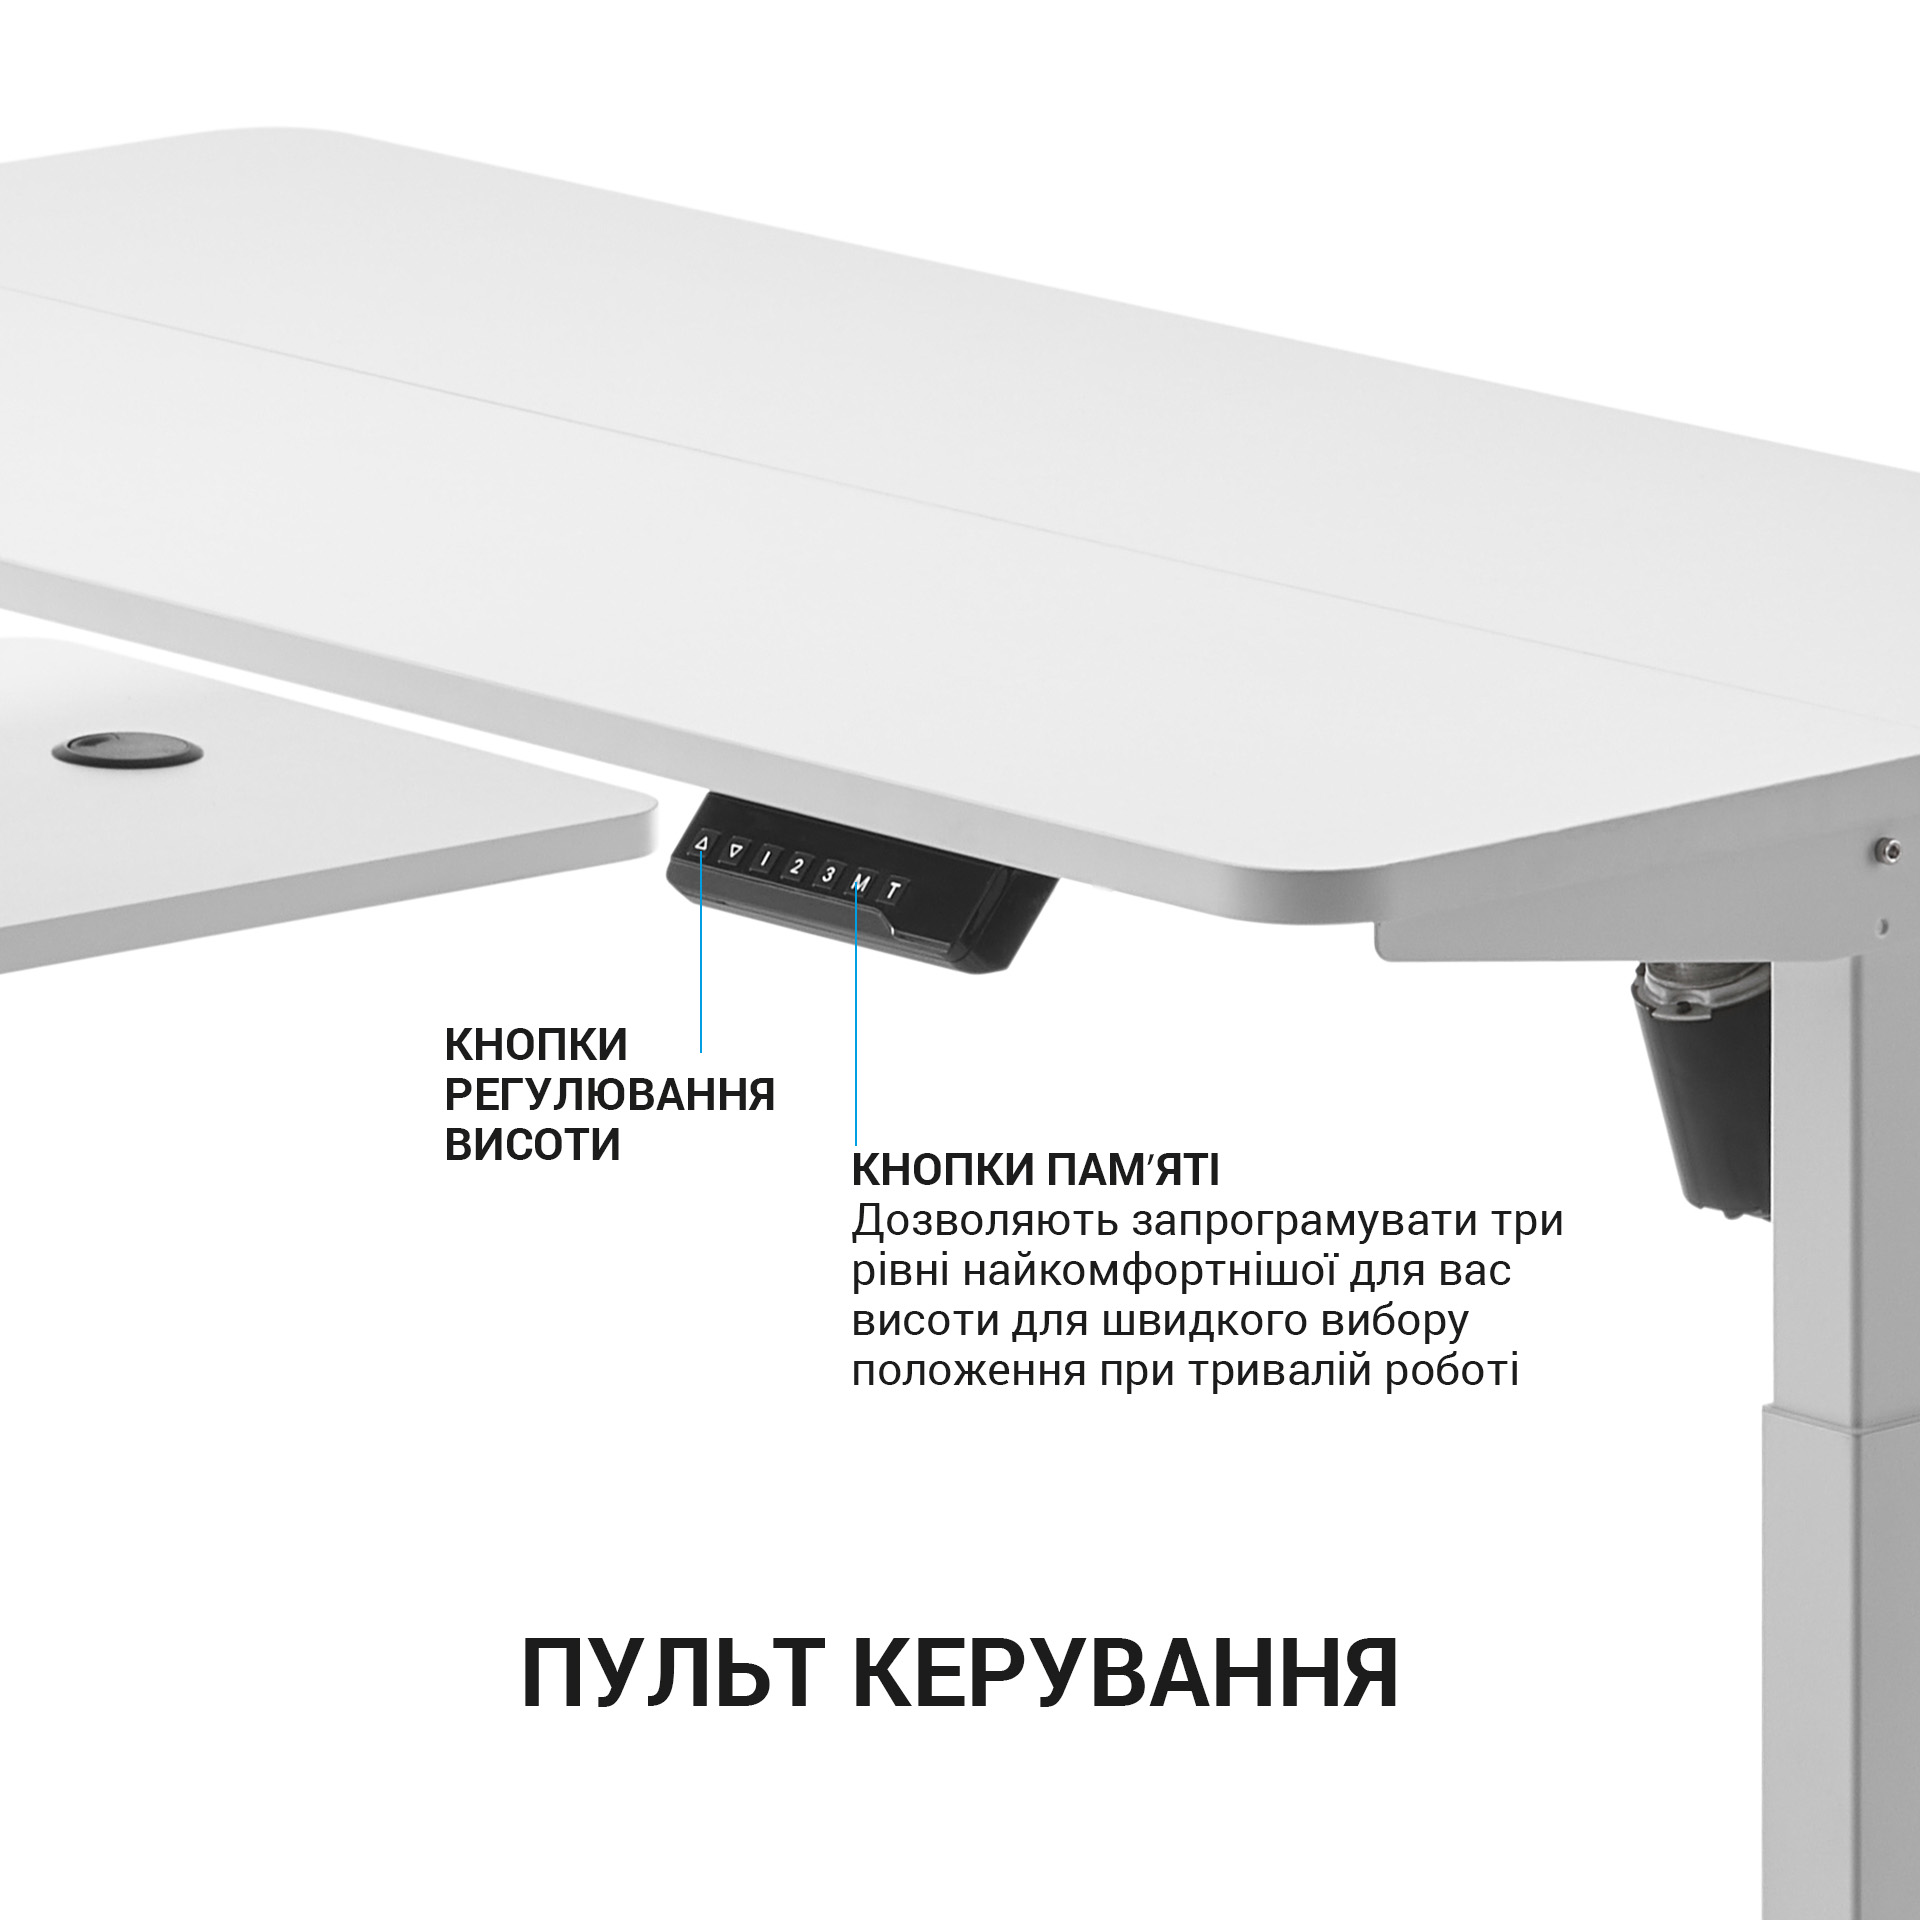 Комп'ютерний стіл OfficePro з електрорегулюванням висоти білий (ODE119W) - фото 7